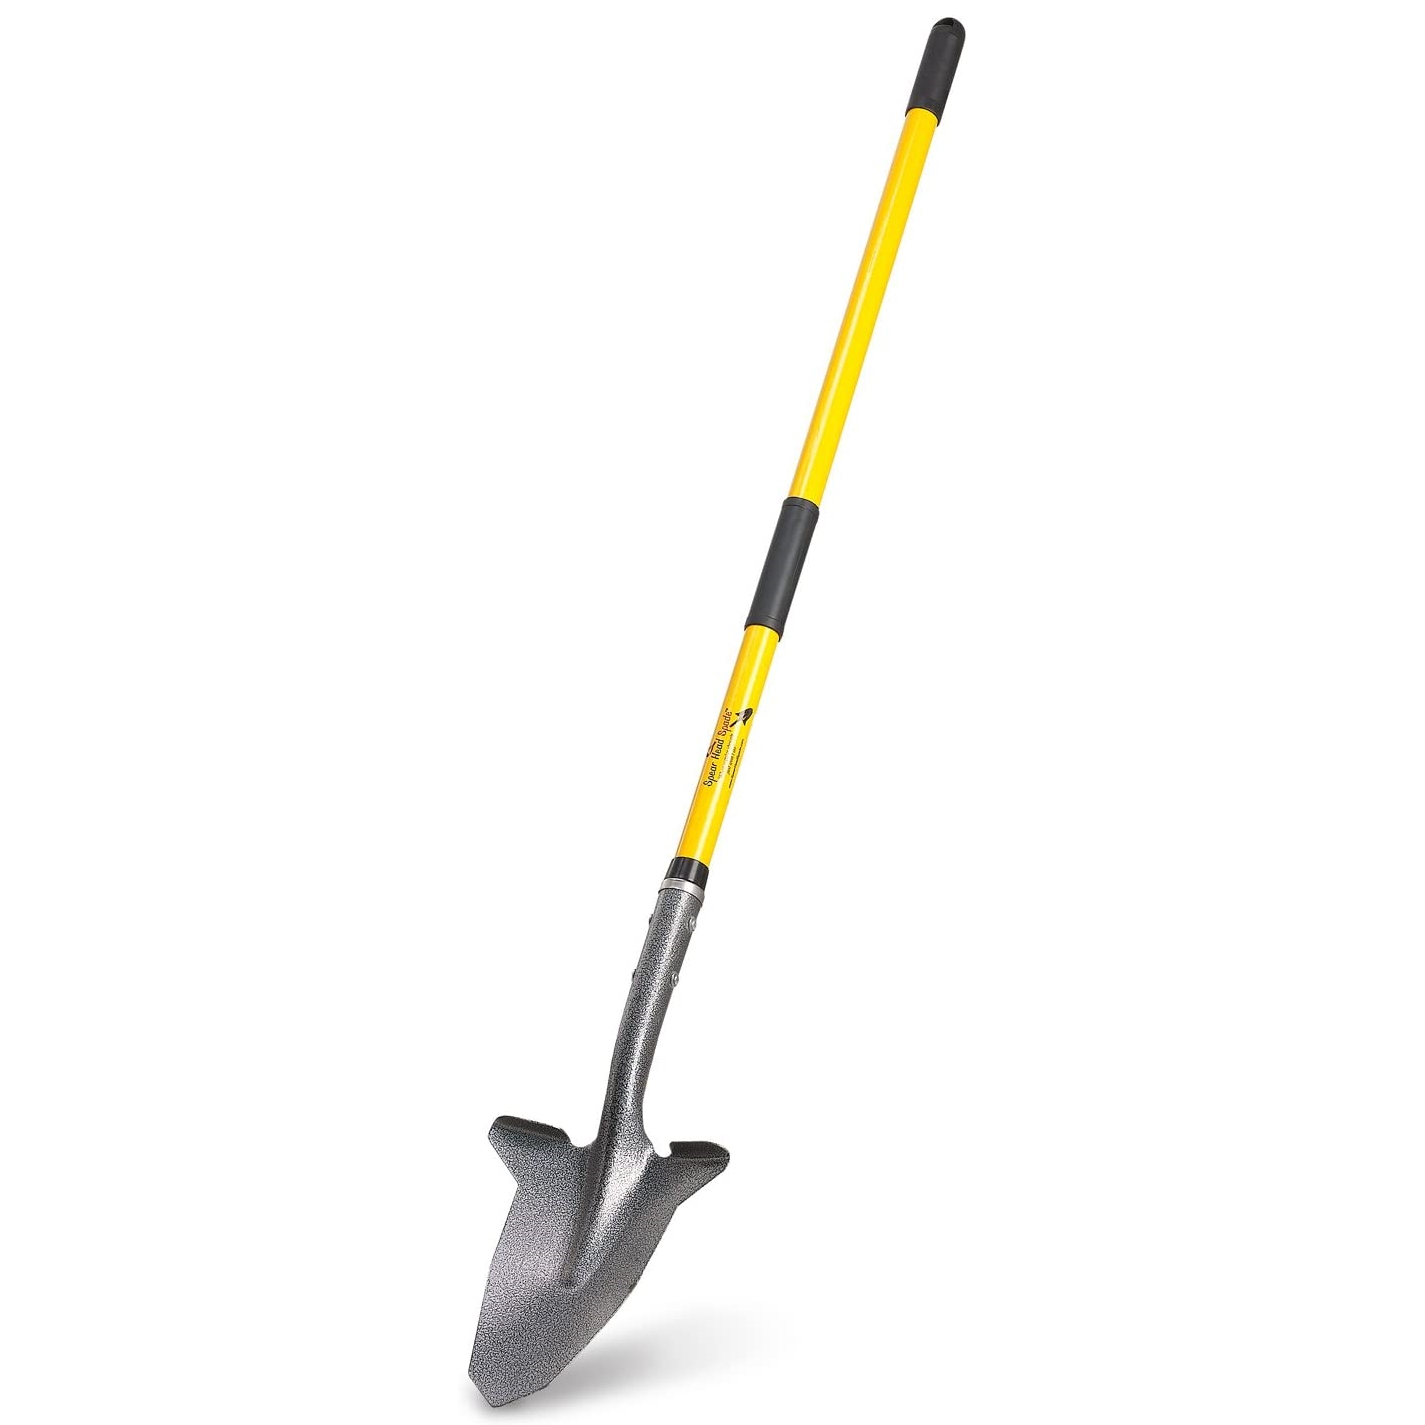 Spear Head Spade Gardening Shovel